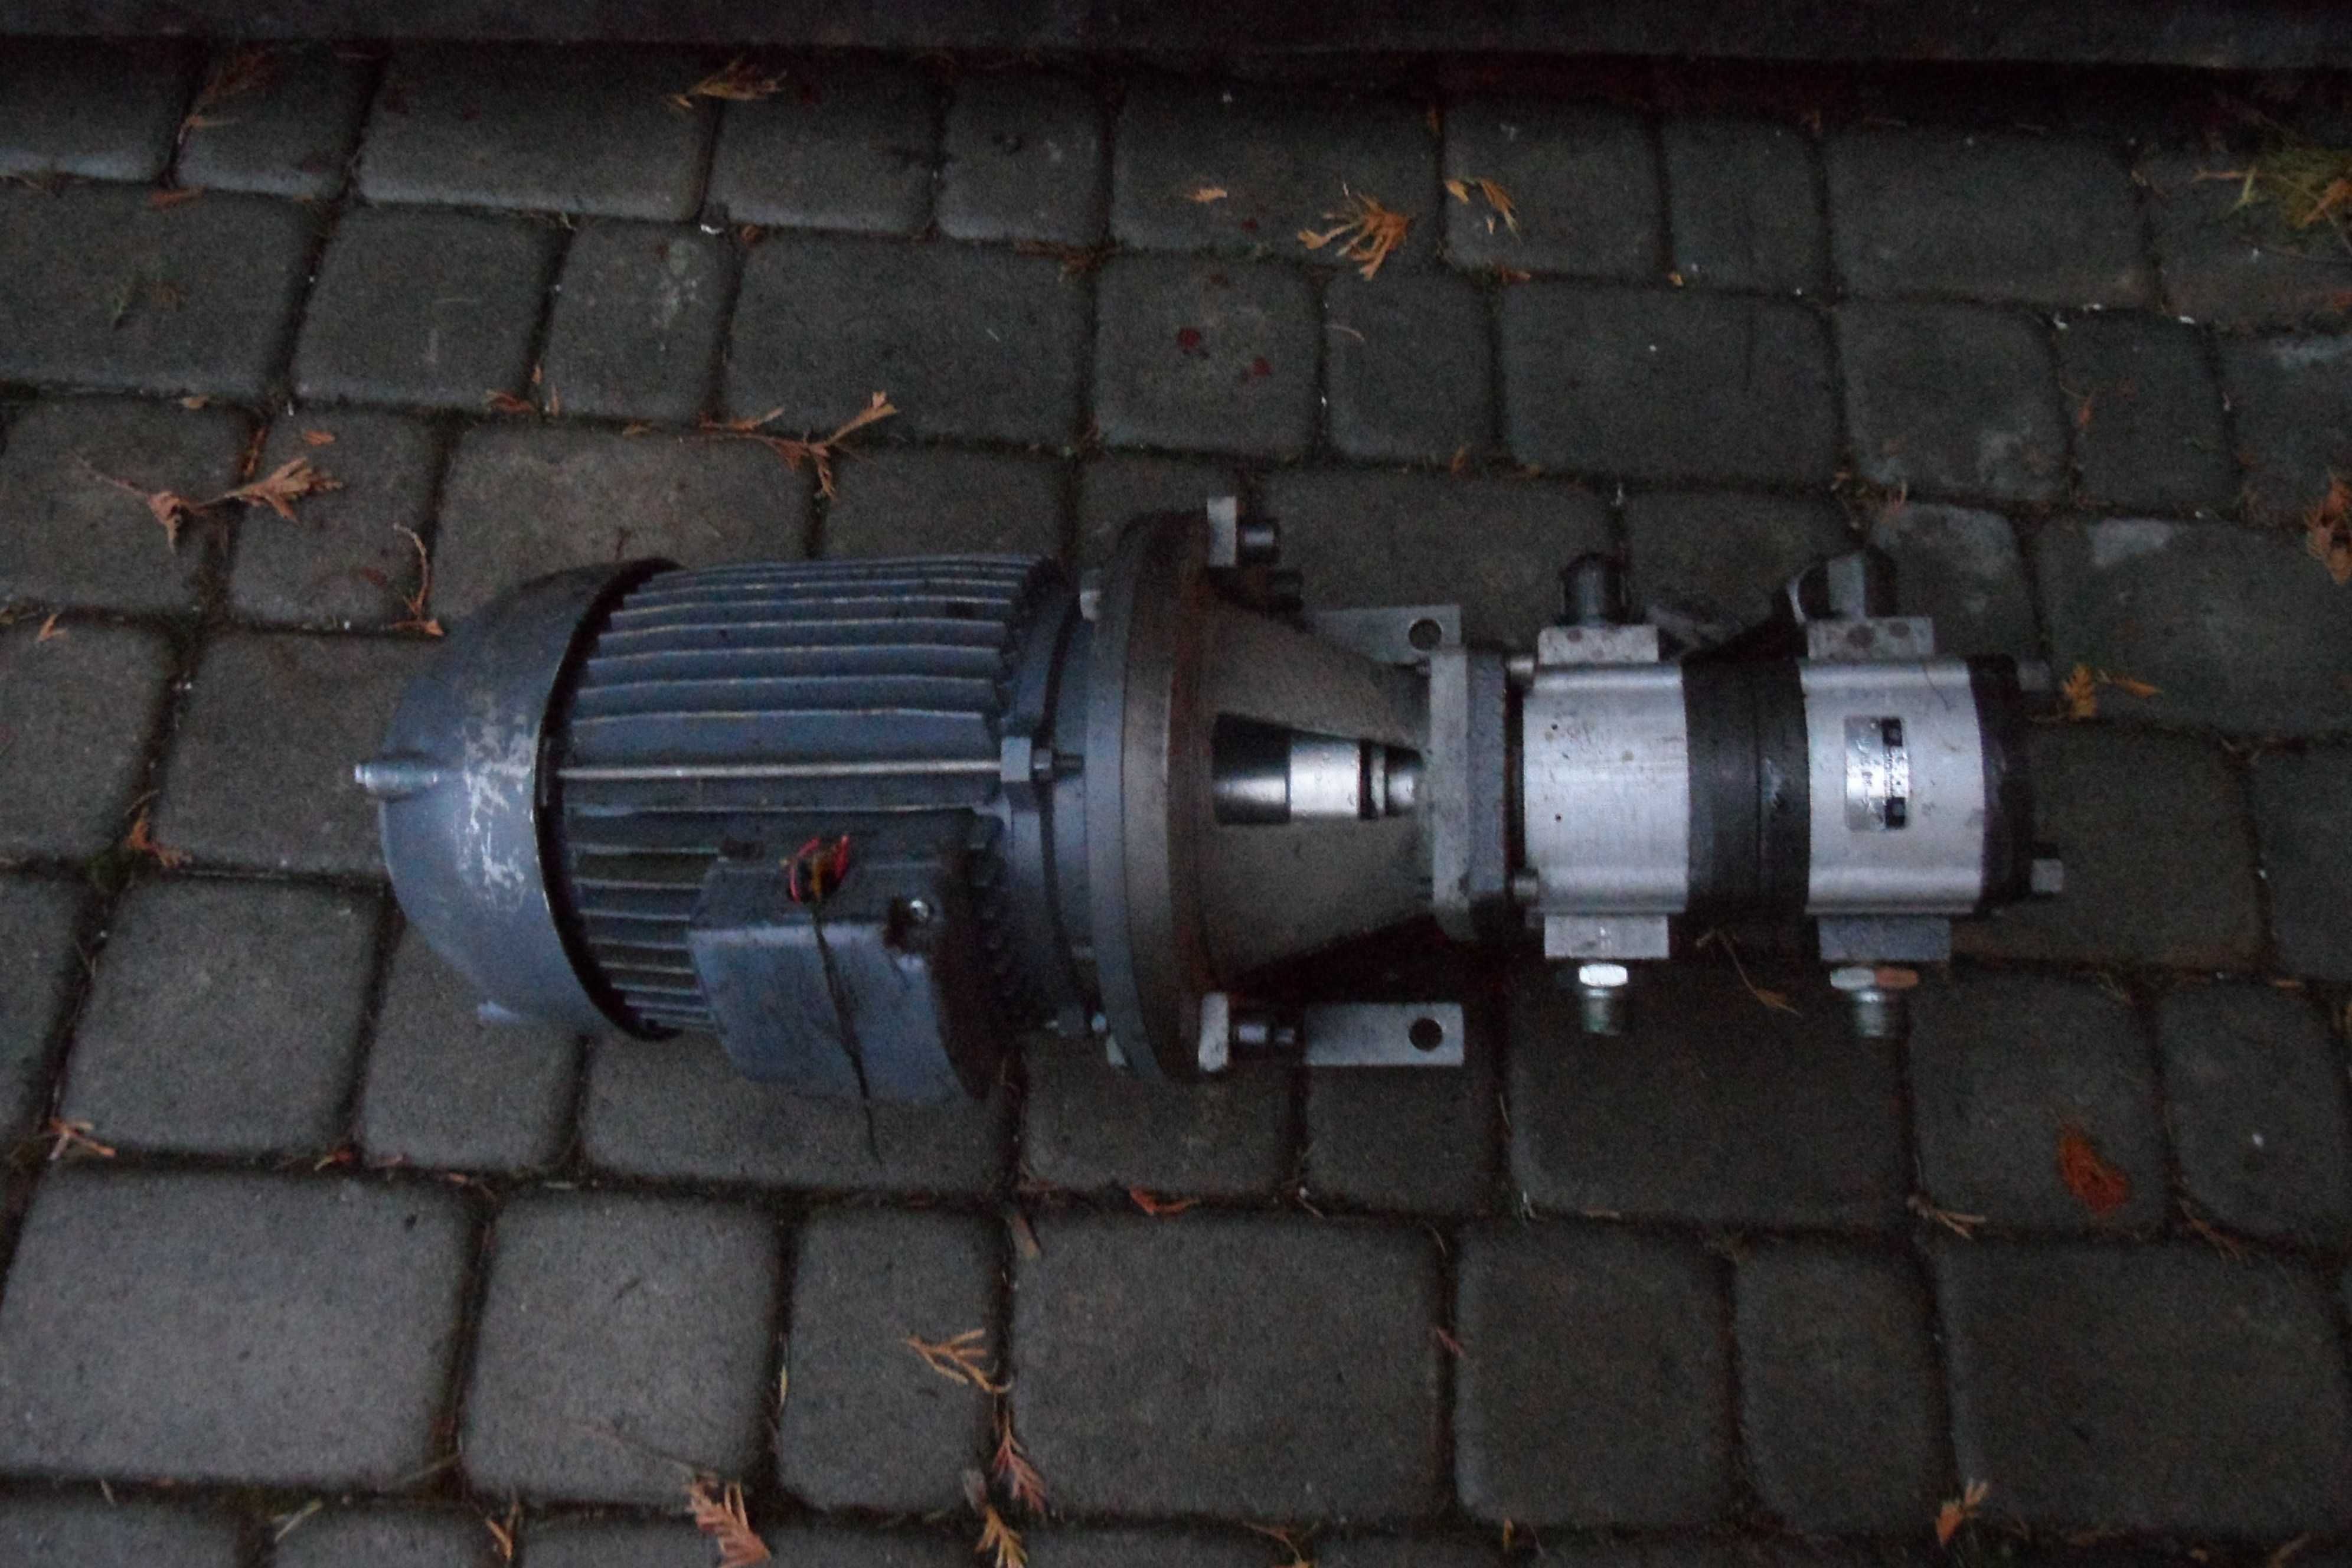 Pompa hydrauliczna z silnikiem kpl. Agregat hydrauliczny łuparka prasa